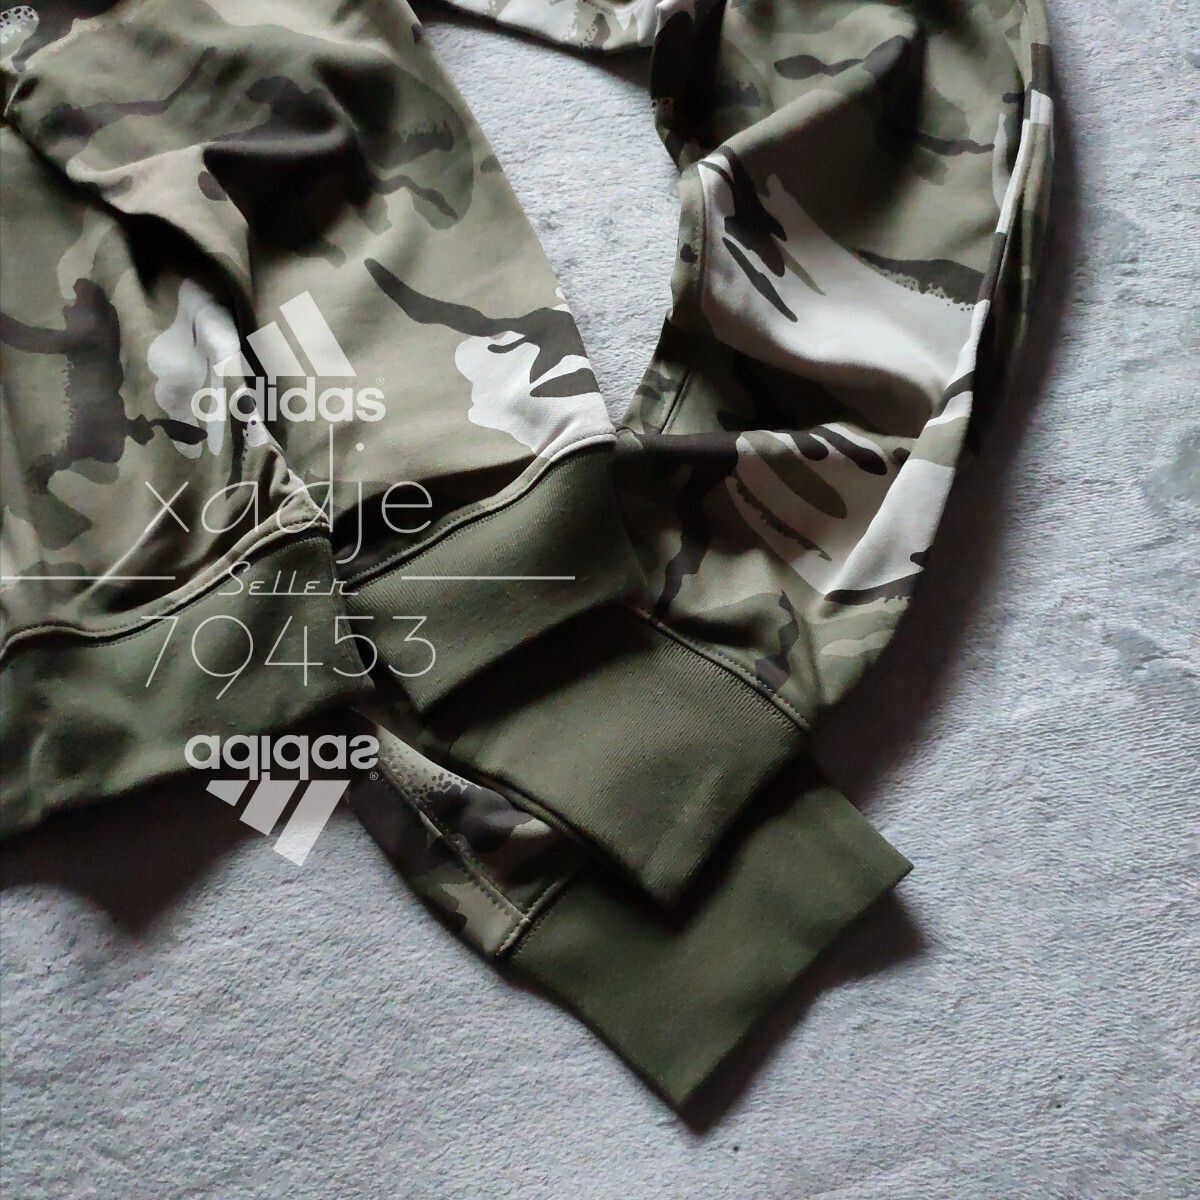 新品 正規品 adidas アディダス 上下セット スウェット トレーナー セットアップ カーキ オリーブ 茶 ブラック ロゴ刺繍 総柄 迷彩 薄手 XL